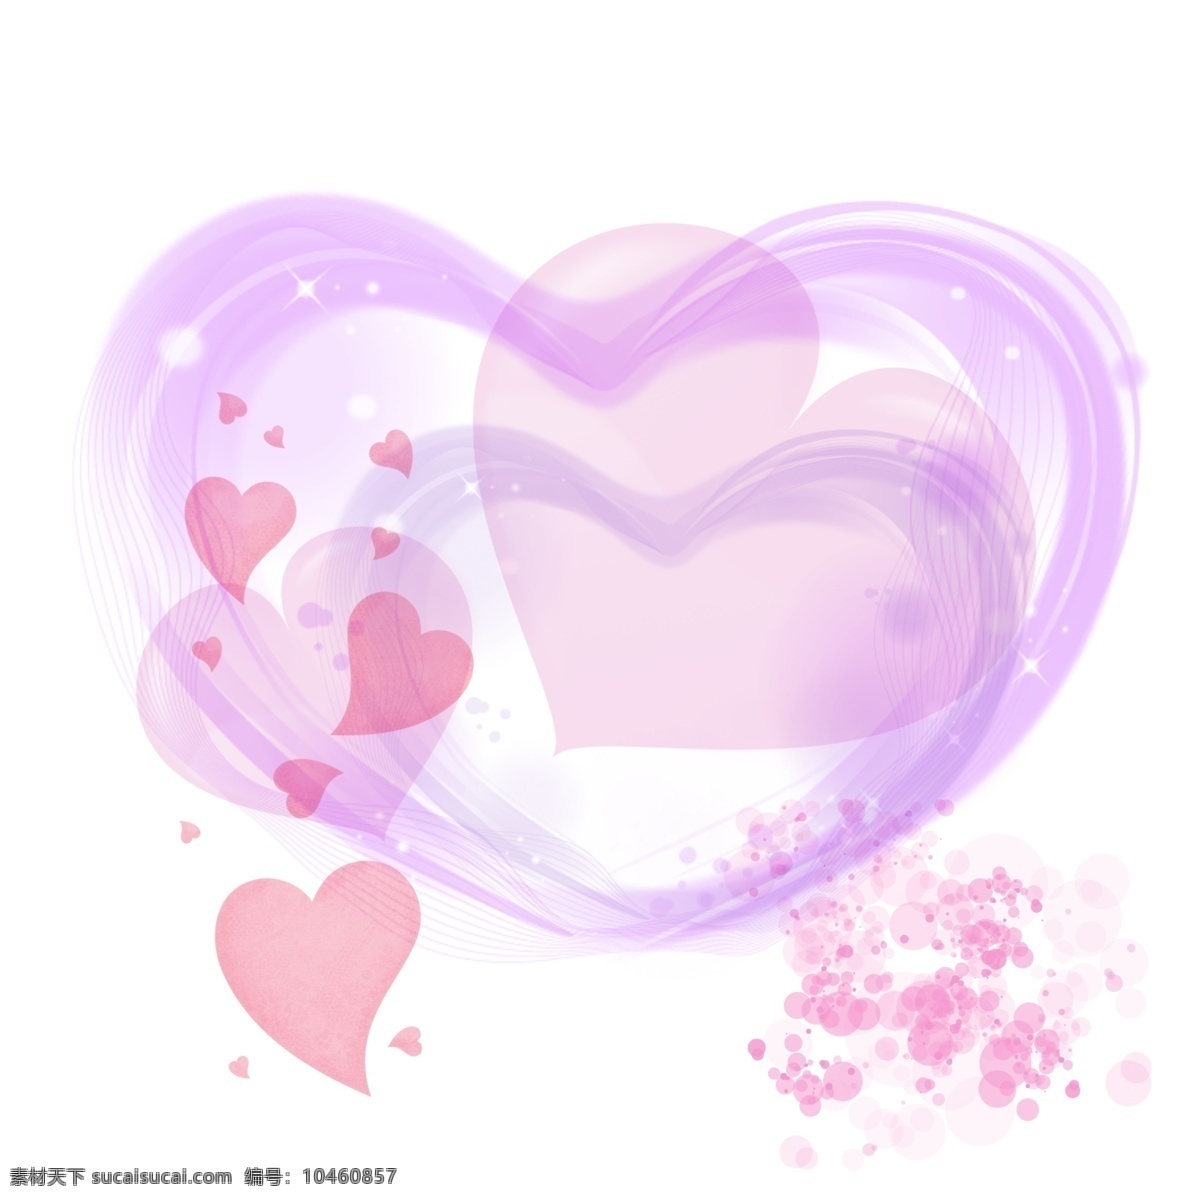 手绘 浪漫 爱心 设计素材 手绘爱心 浪漫爱心设计 心形设计 紫色心形 粉色爱心 卡通爱心设计 星光设计 平面设计